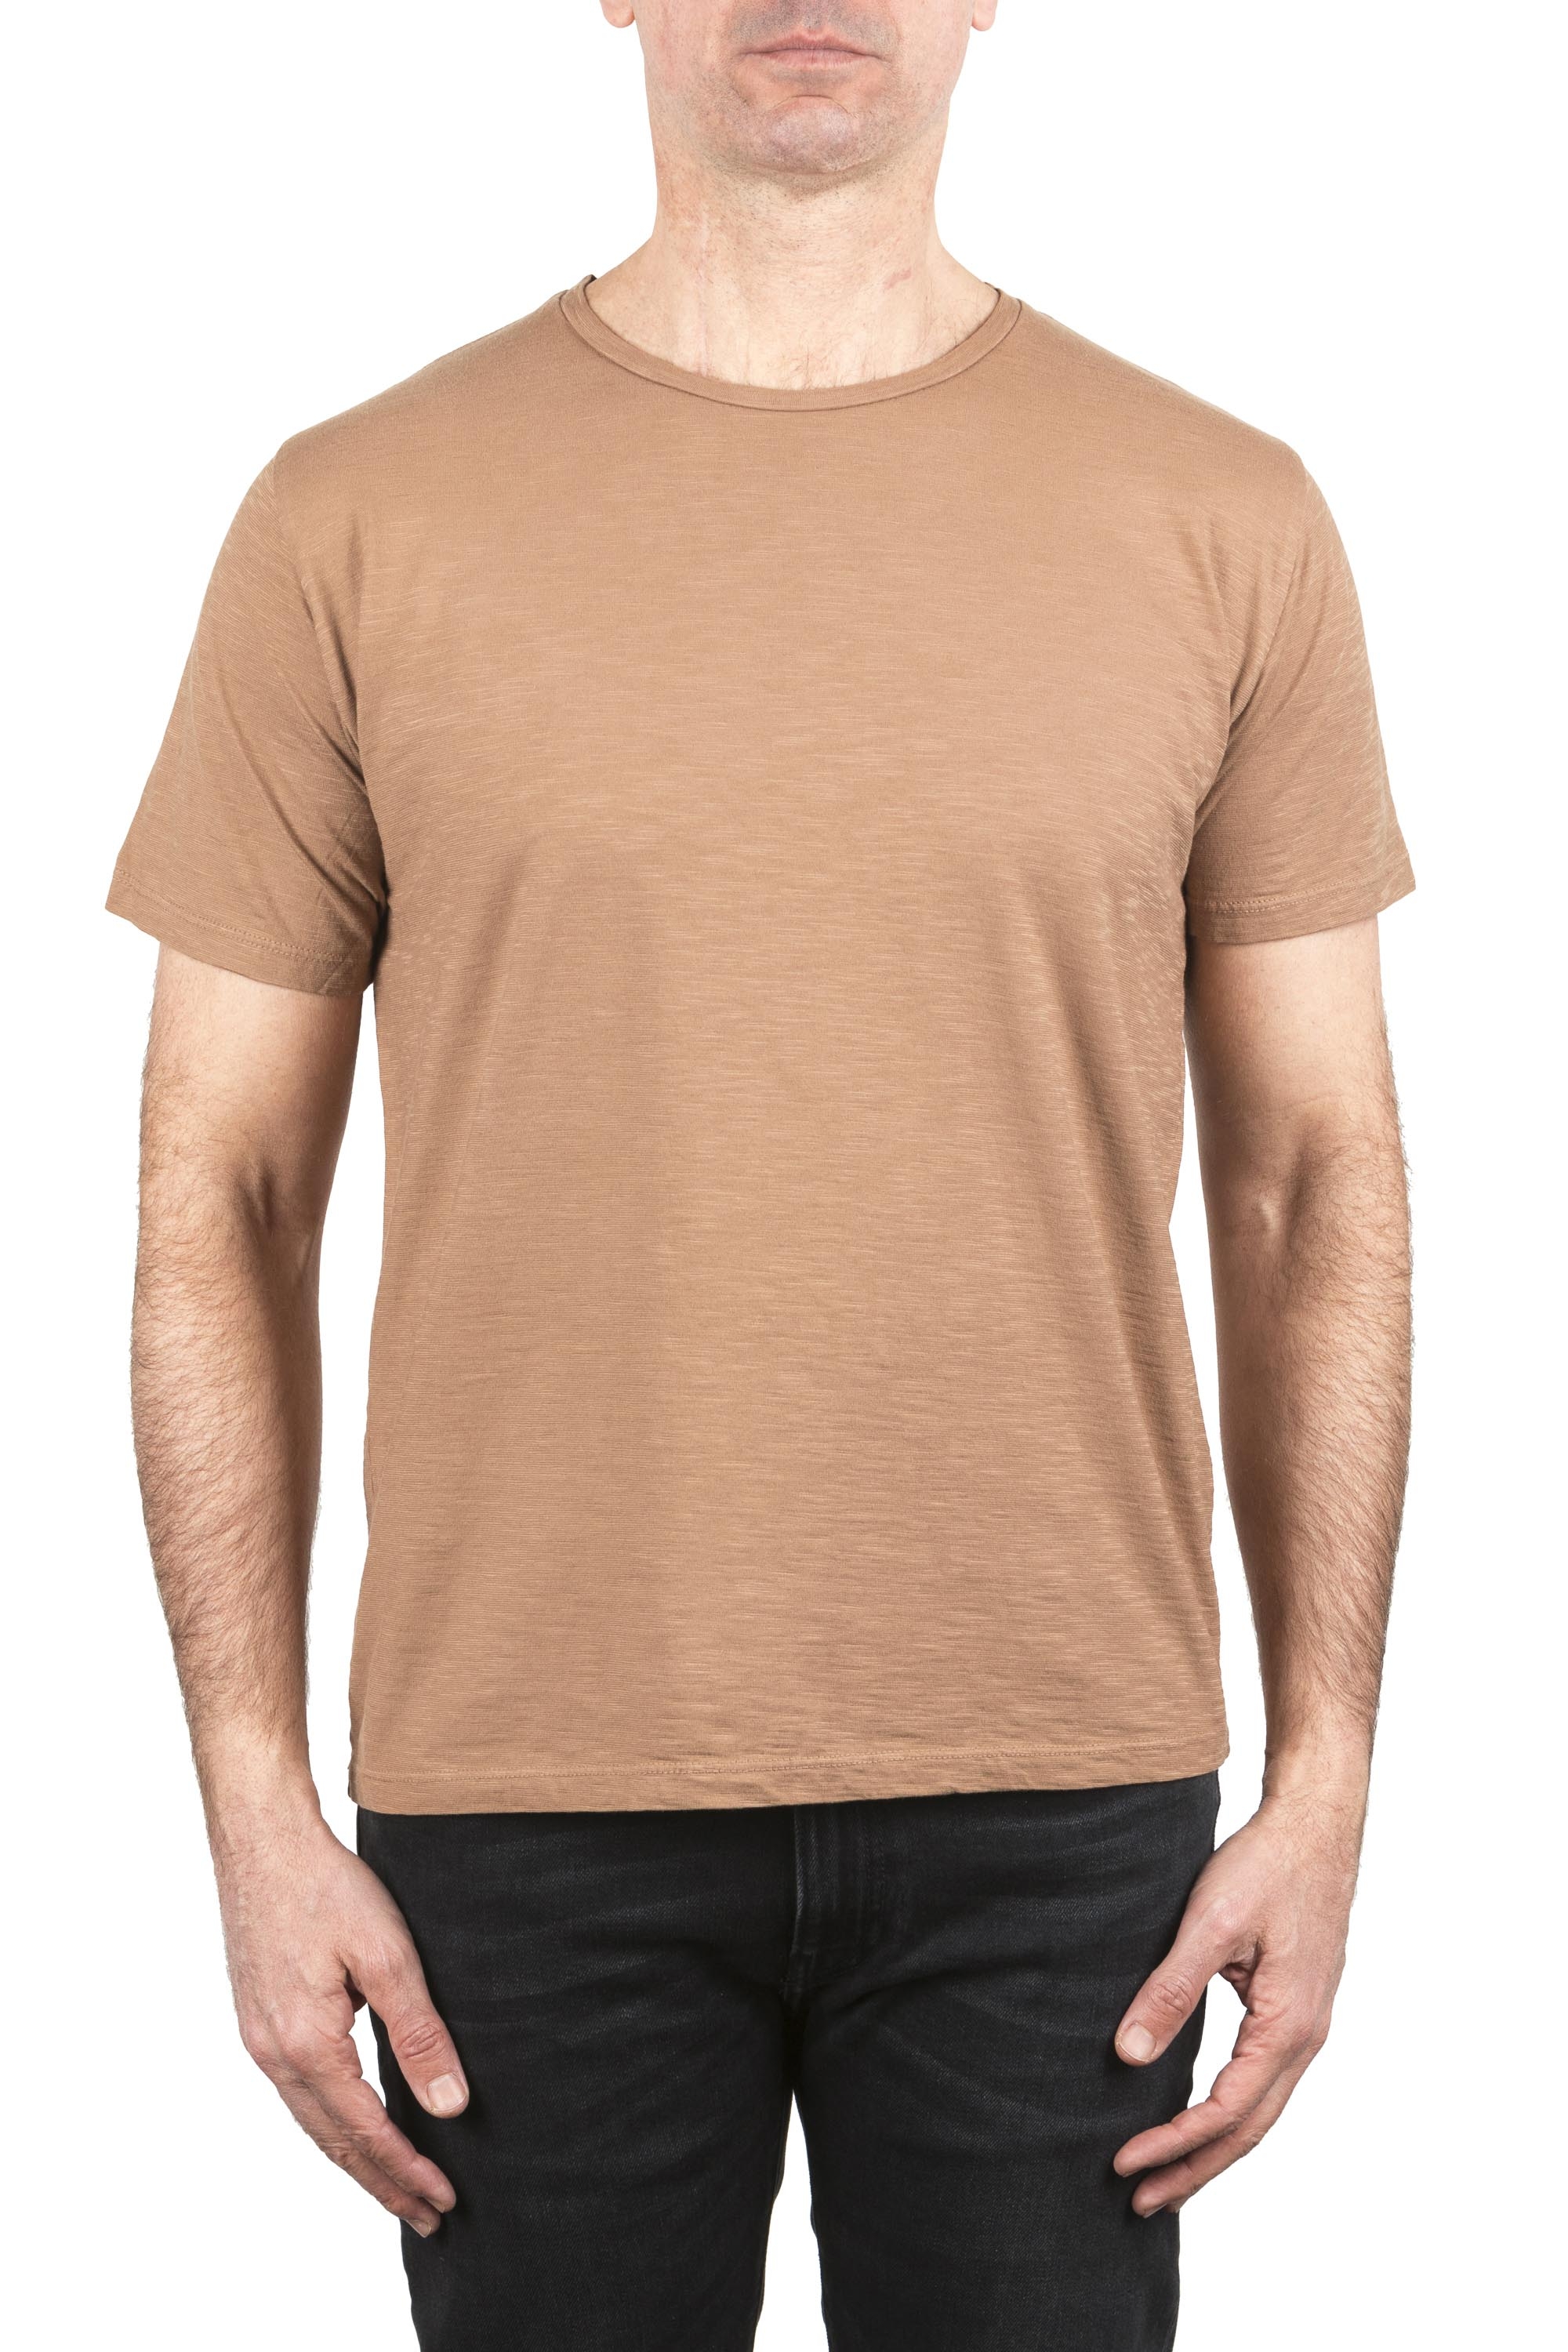 SBU 05010_24SS T-shirt girocollo aperto in cotone fiammato marrone 01